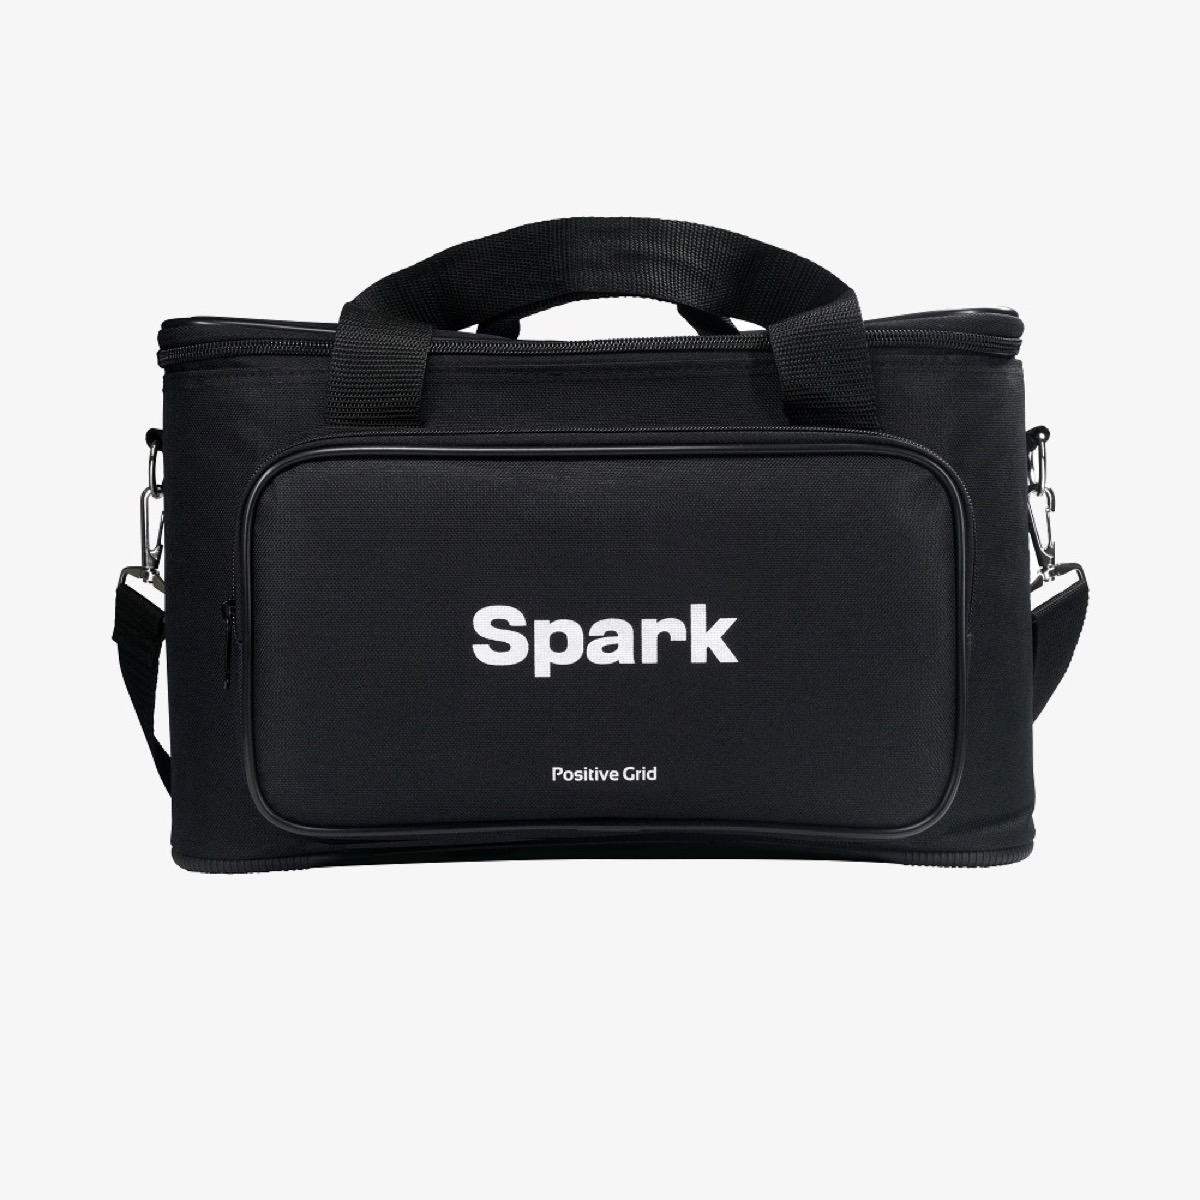 Positive Grid Spark Bag - Black